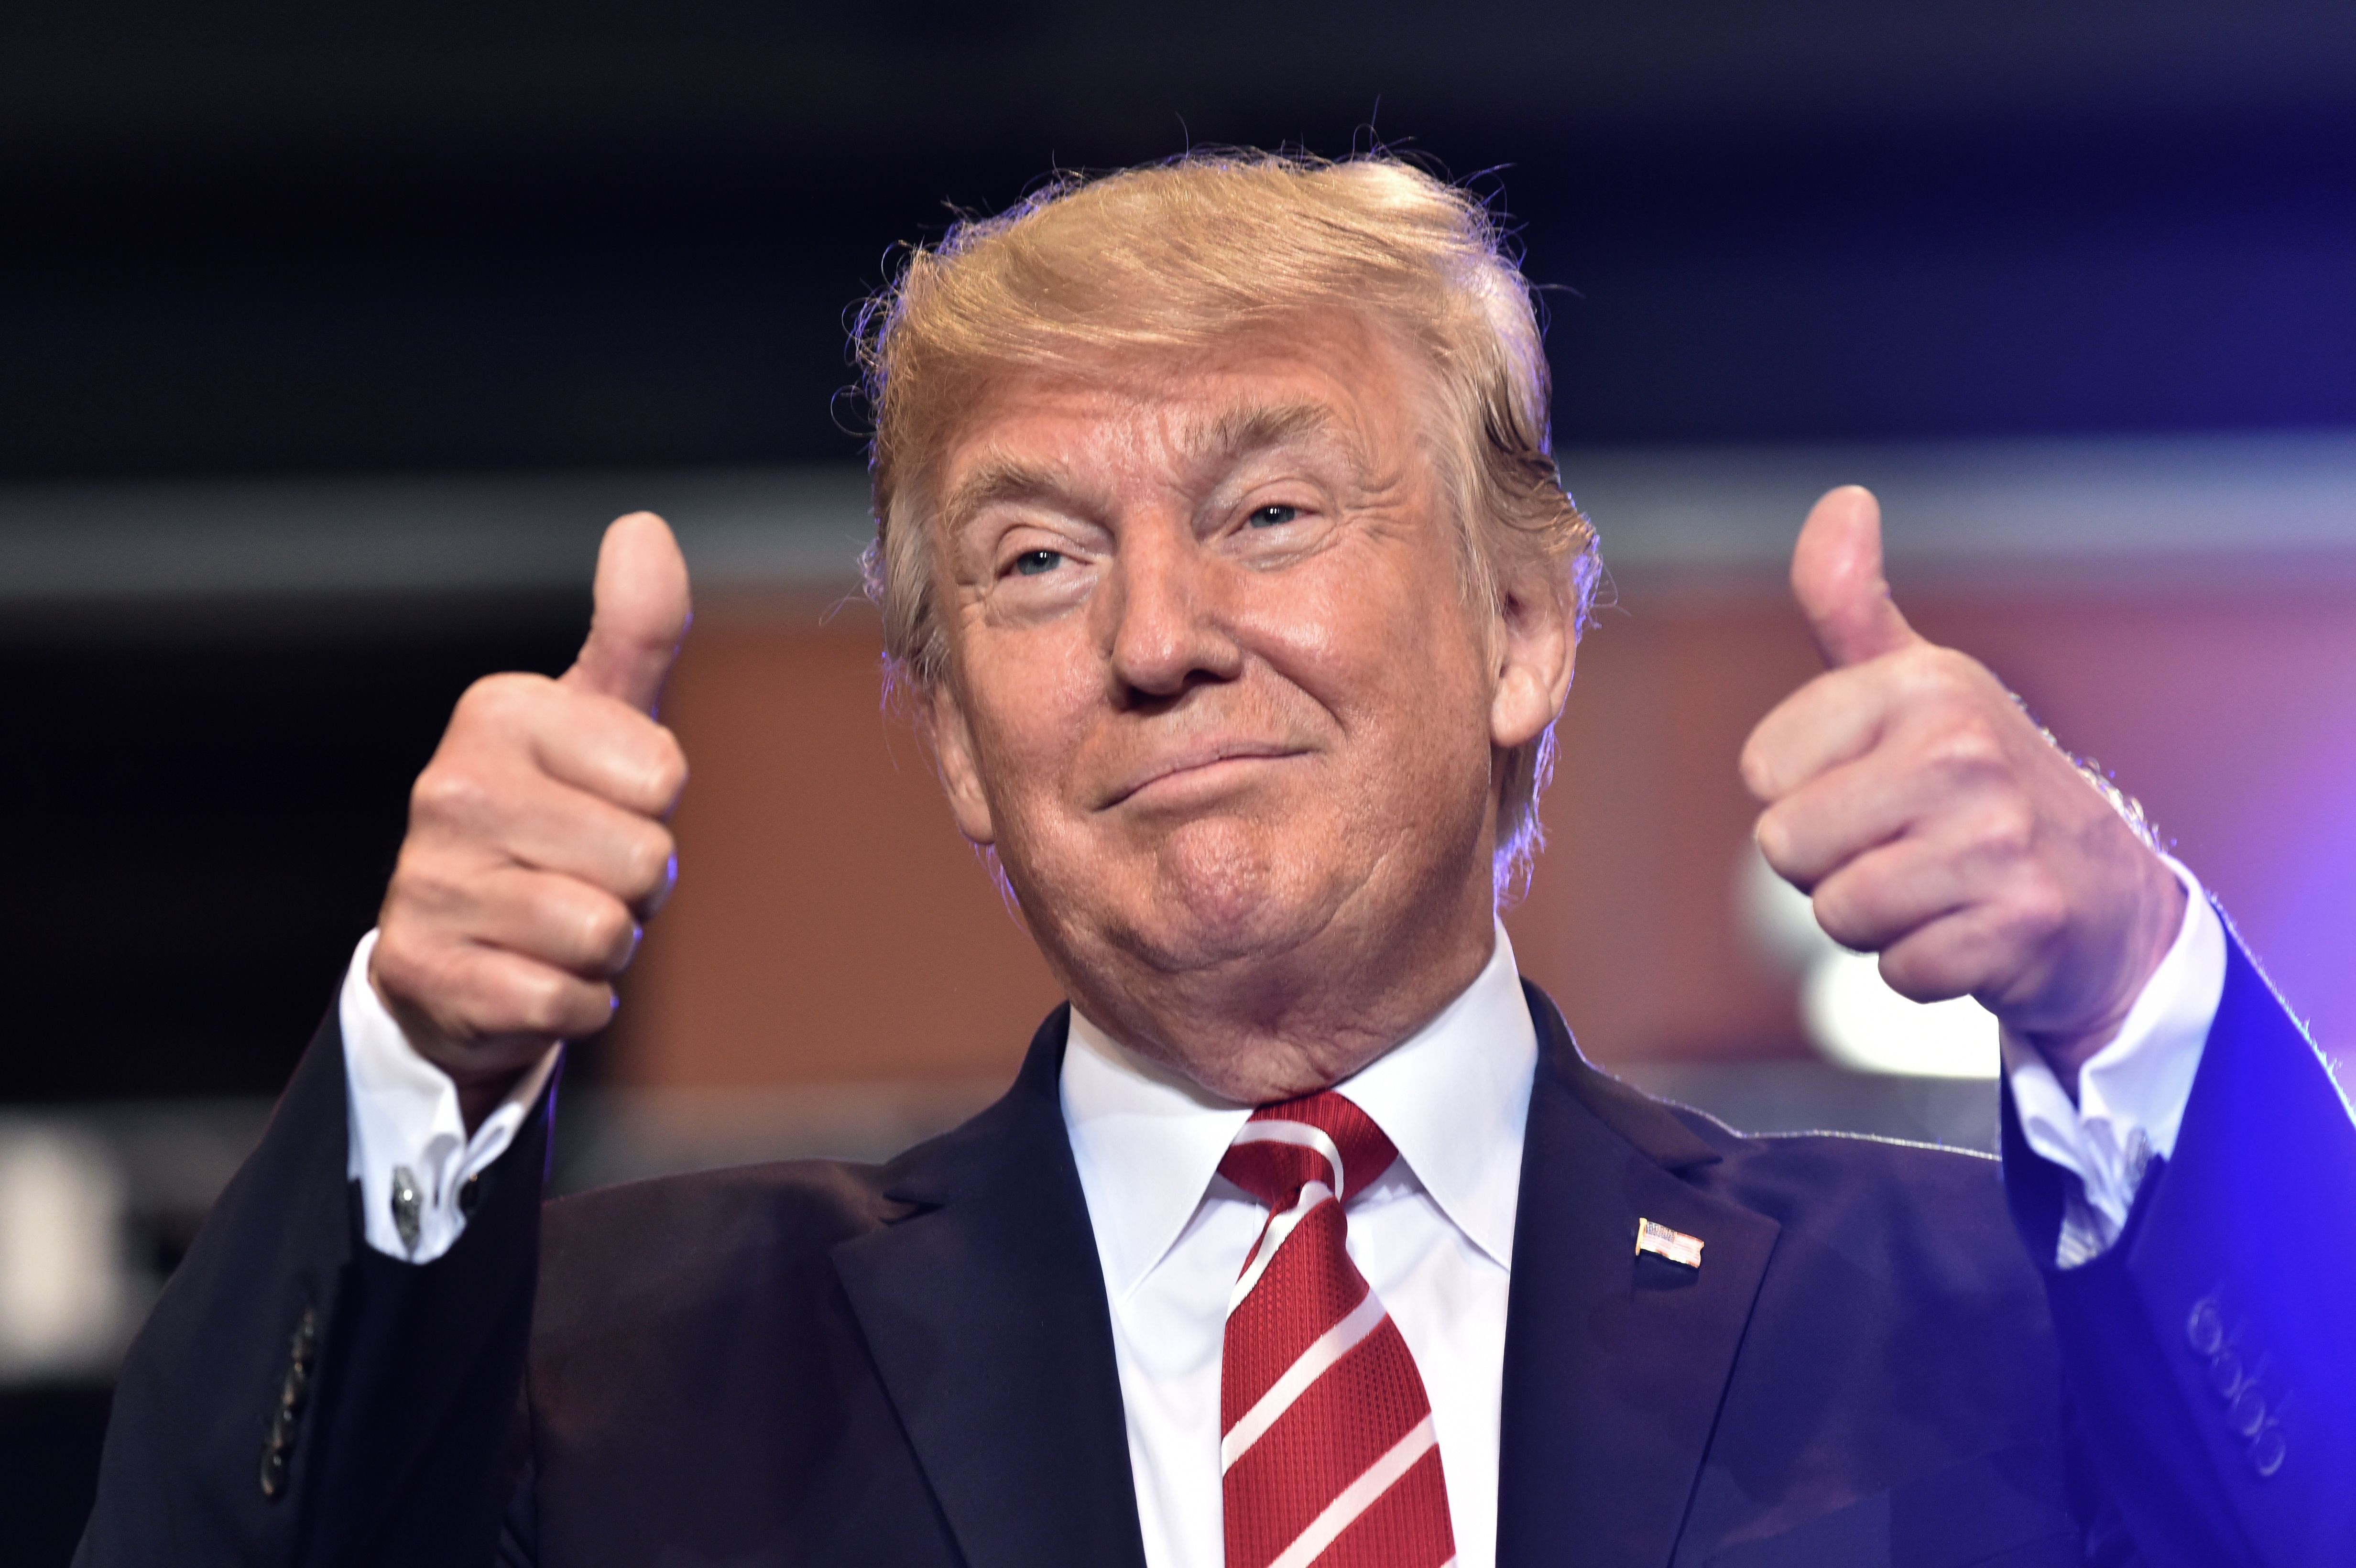 Trump thumbs up